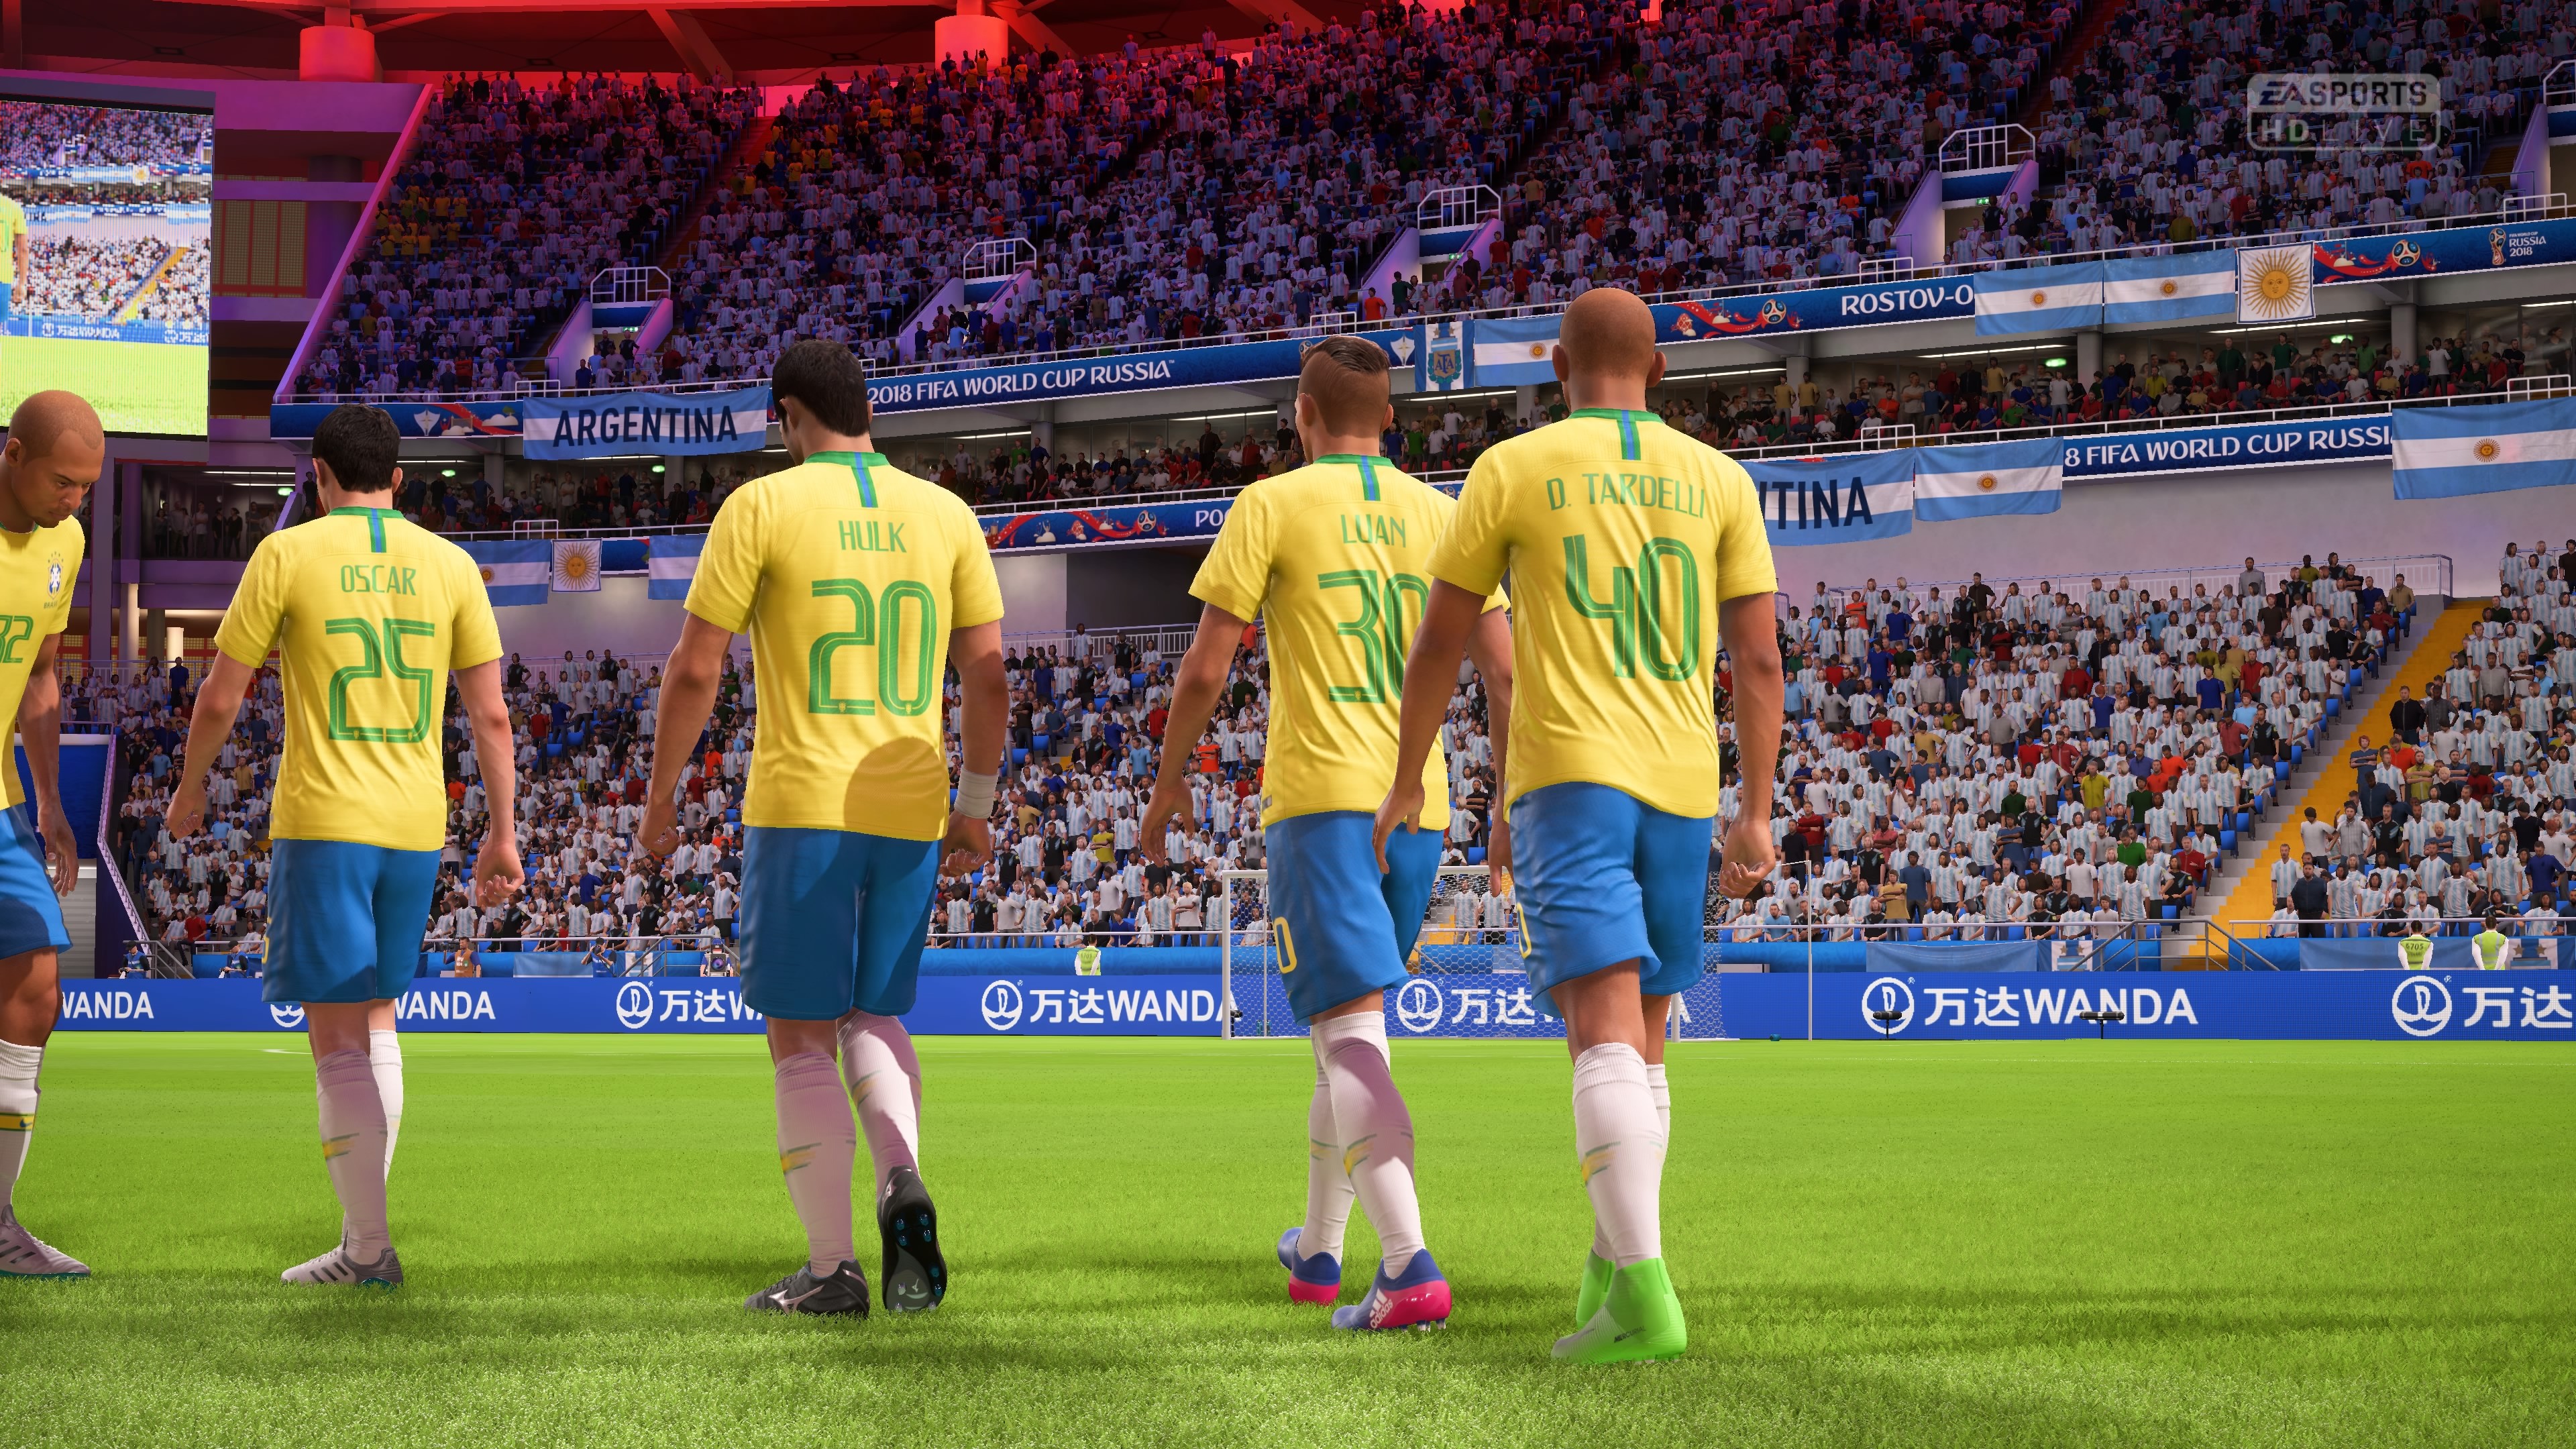 Modo Copa do 'FIFA 18' tem uma escalação meio zoada pra Seleção